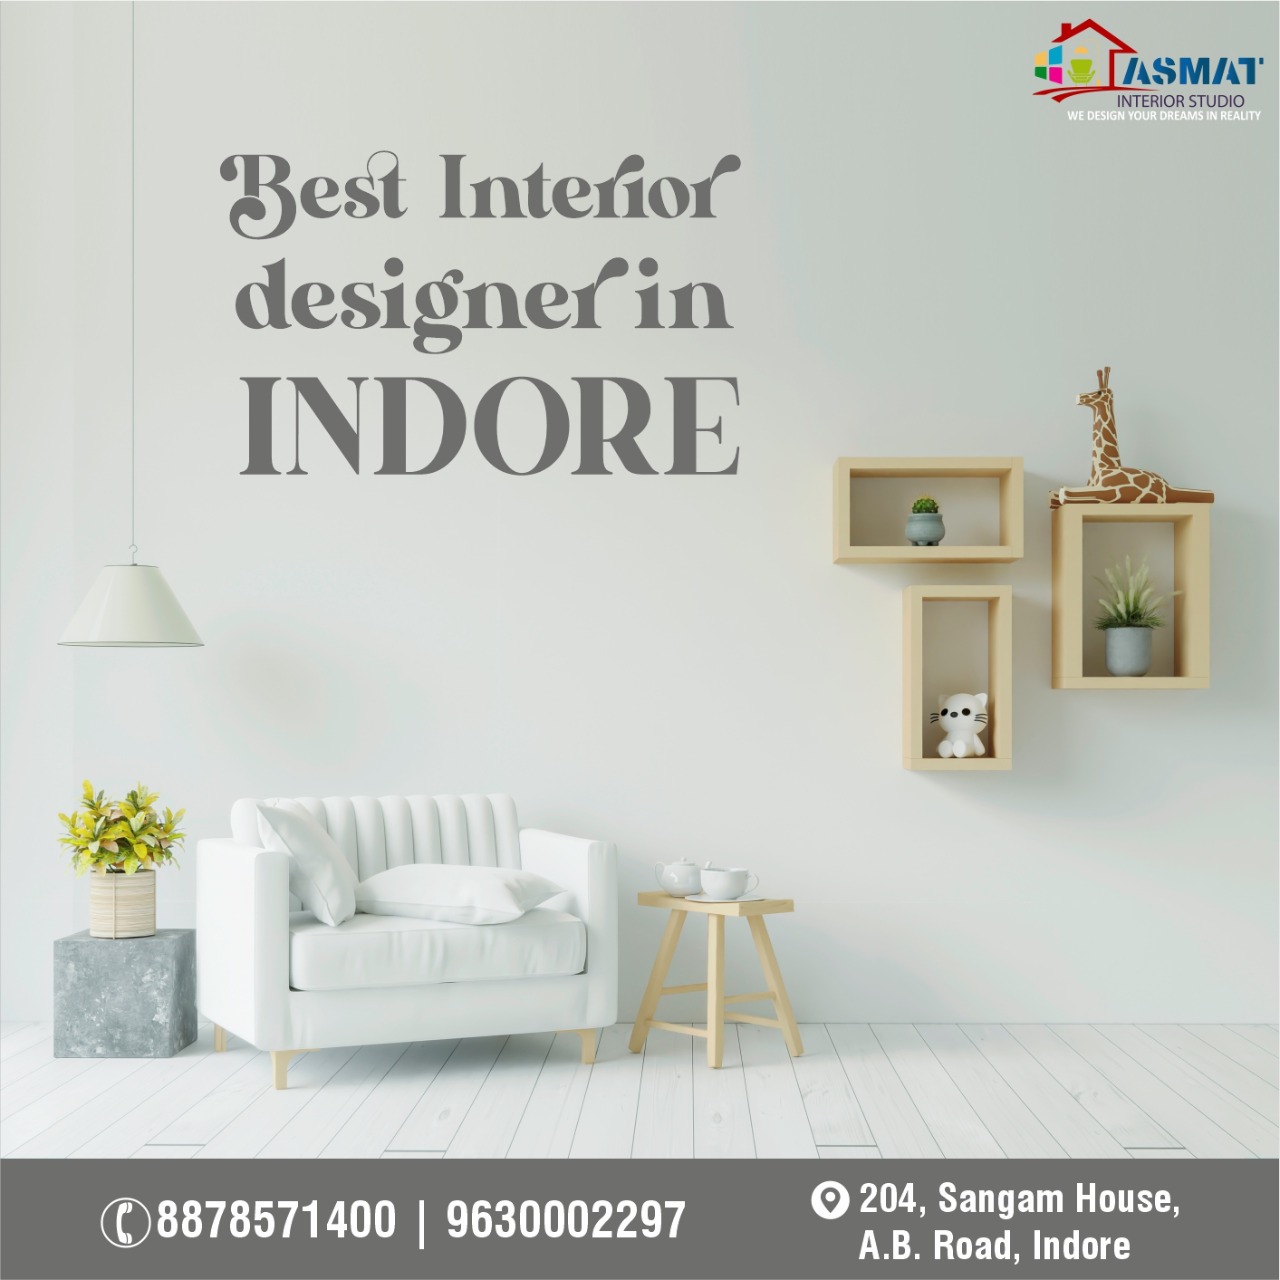 Top Interior Designer In Indore